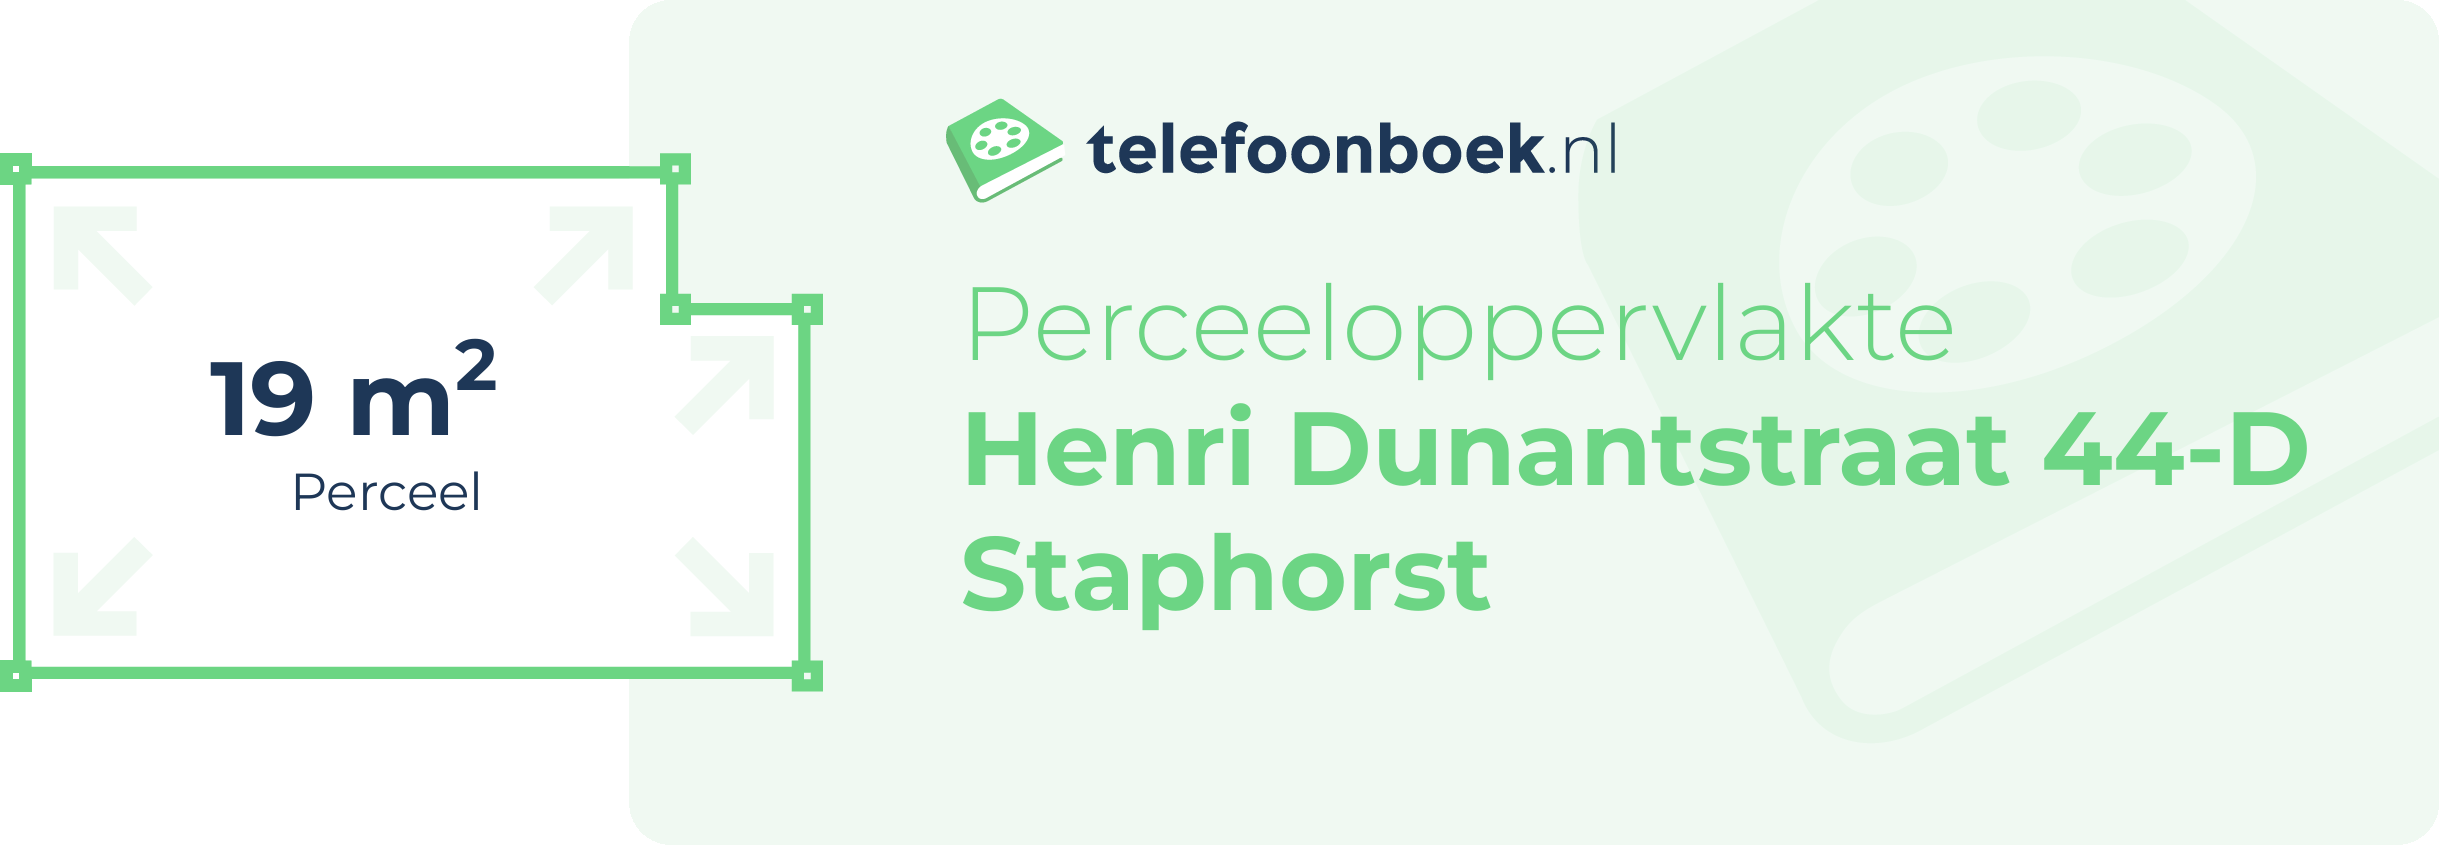 Perceeloppervlakte Henri Dunantstraat 44-D Staphorst